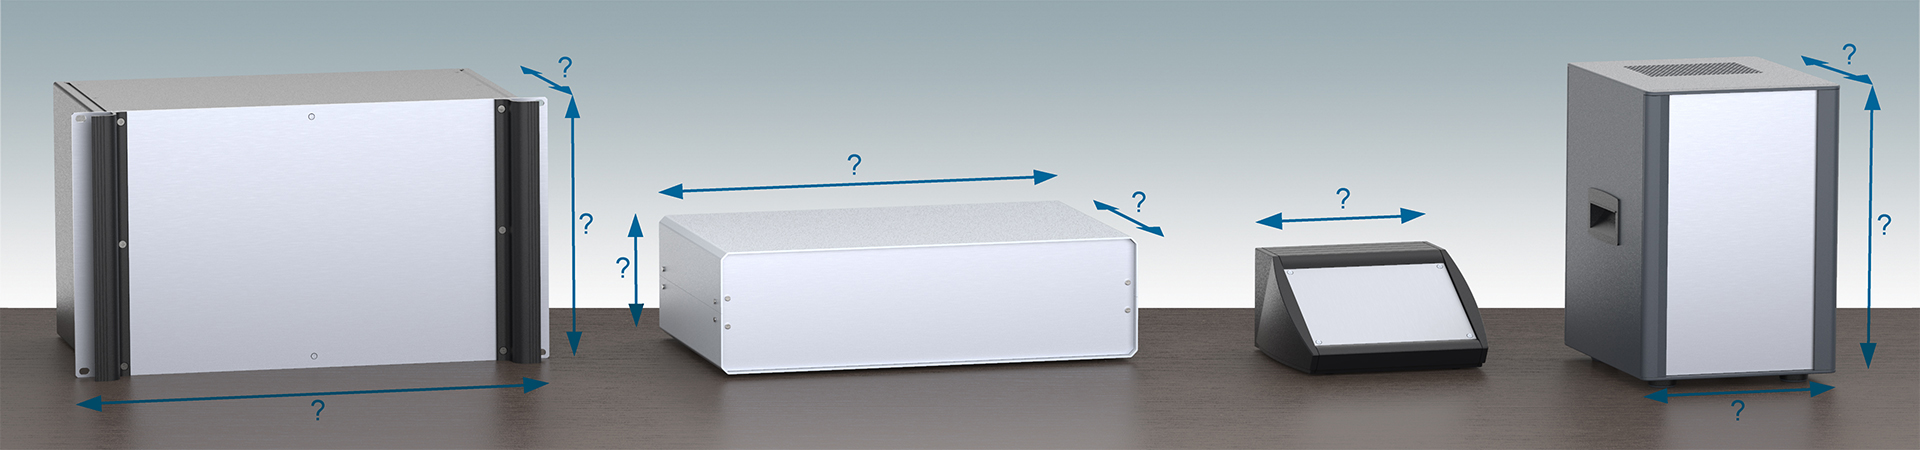 Les boitiers METCASE peuvent être fabriqués selon des dimensions personnalisées